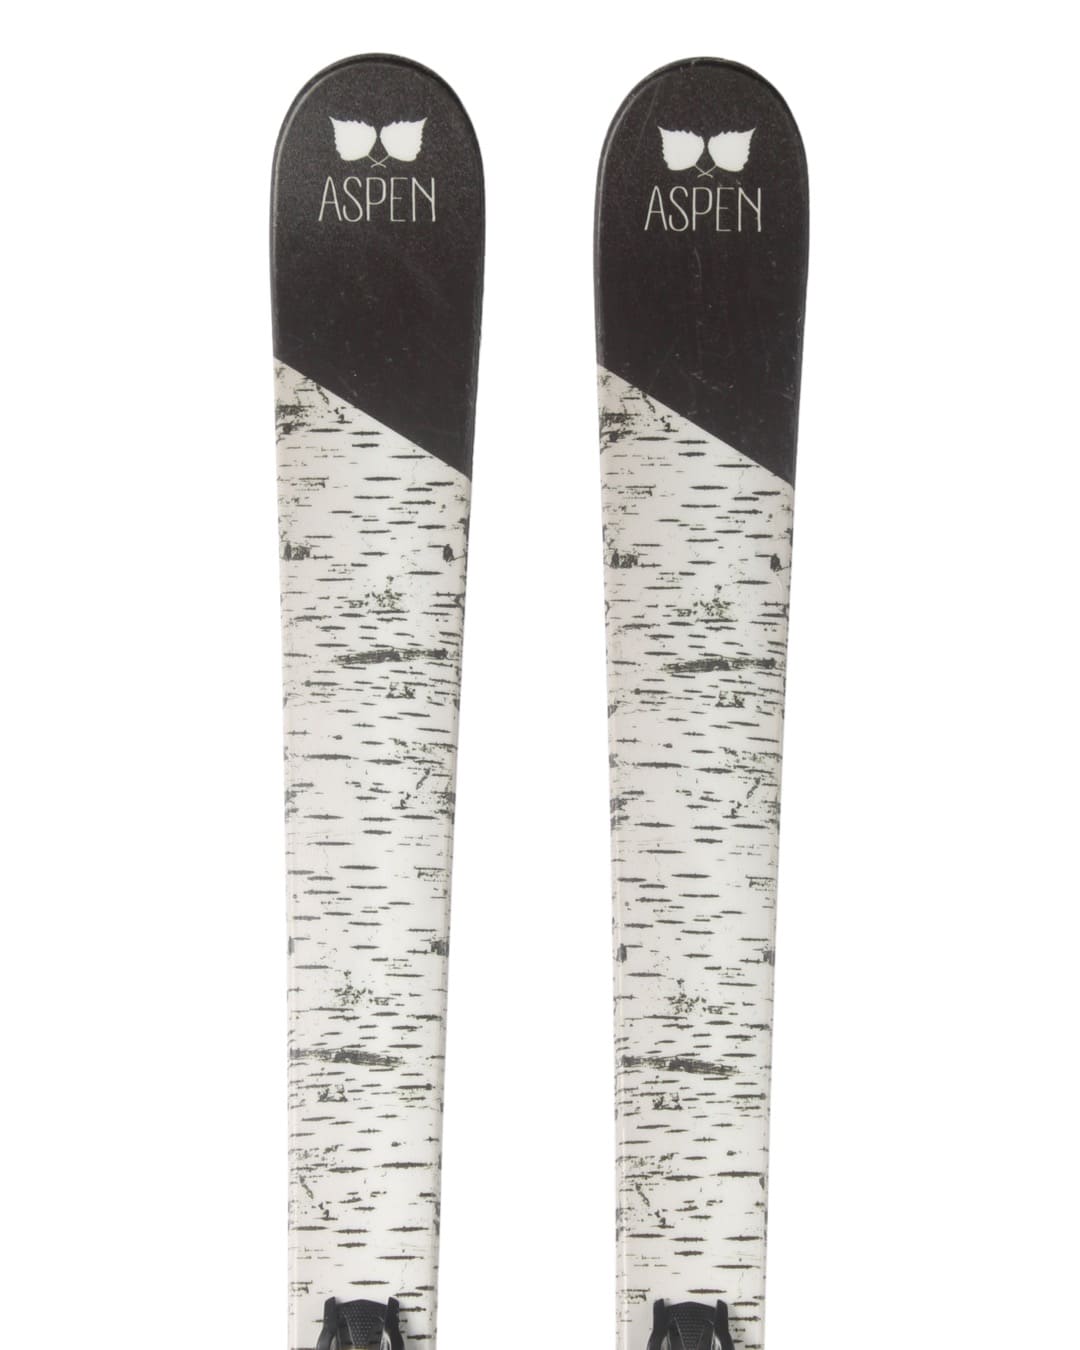 Ski - Aspen Bark - 1199 kr